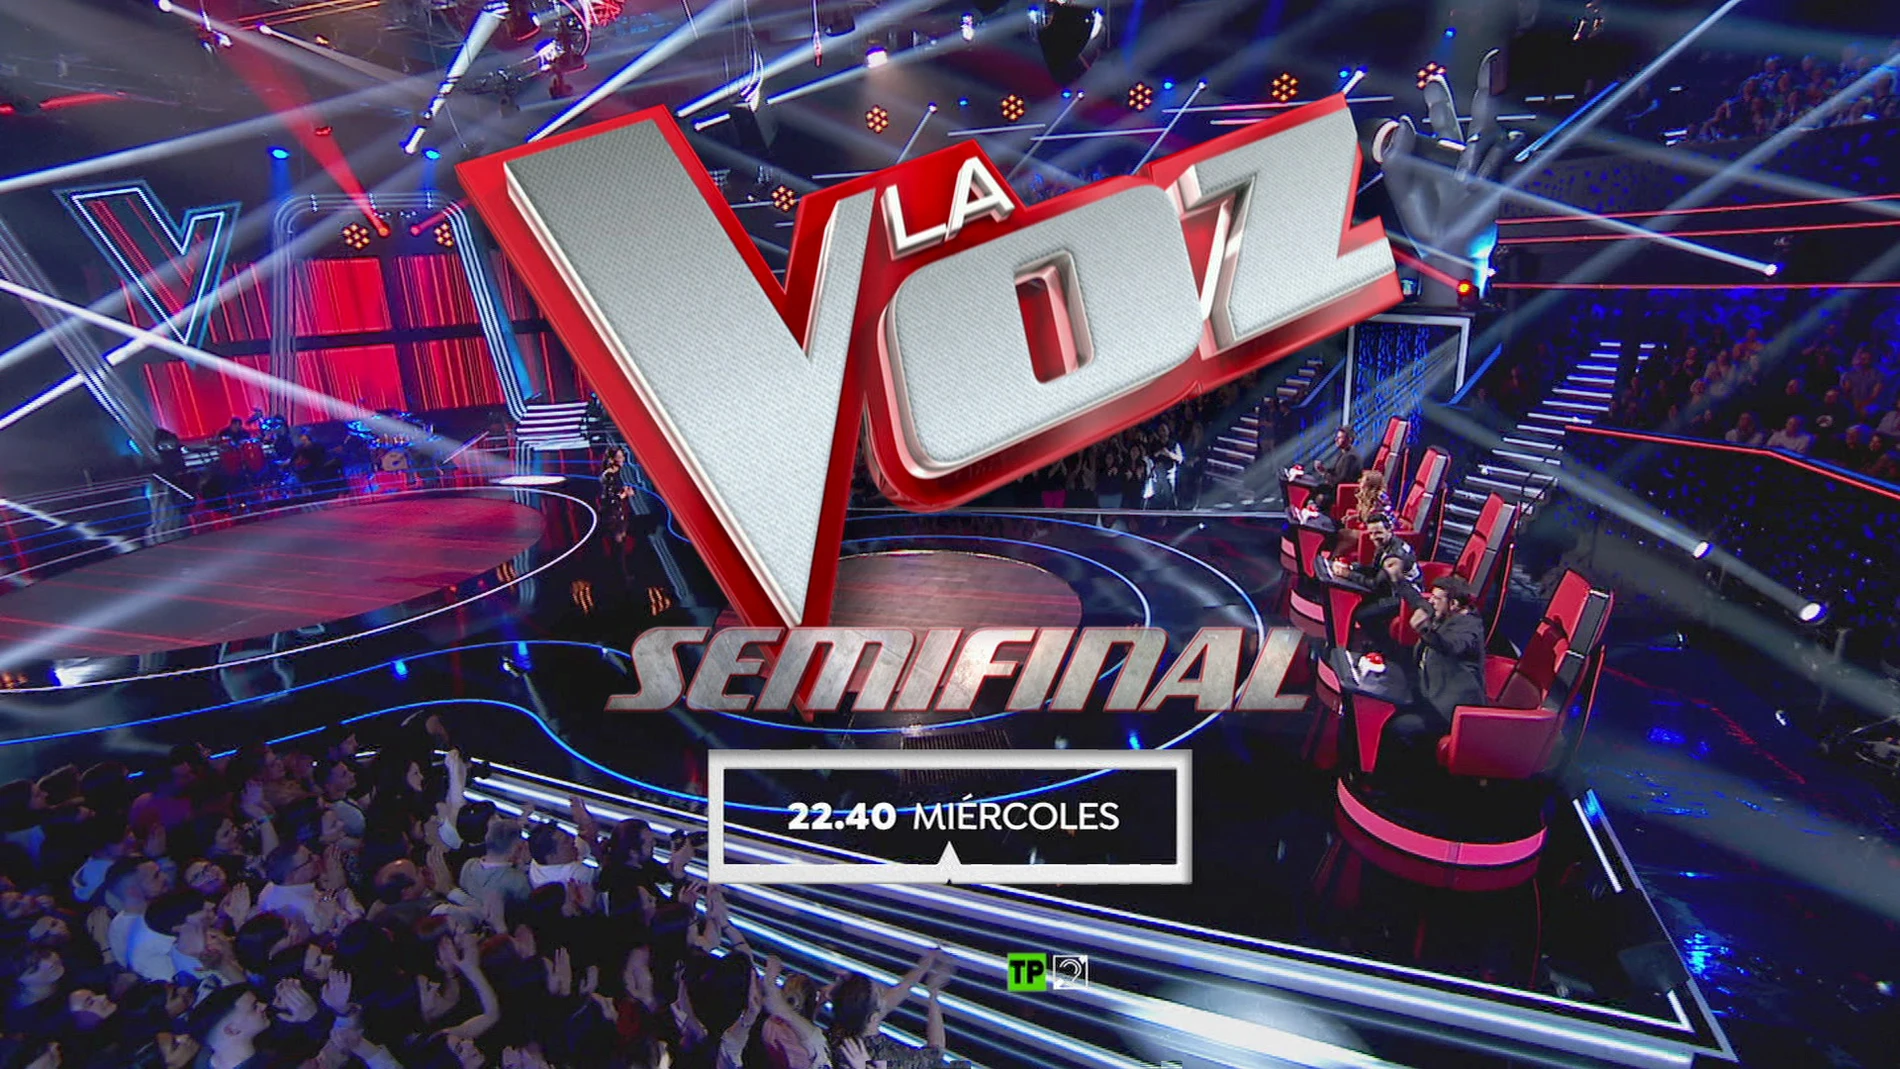 El miércoles a las 22:40 horas, ocho grandes voces se lo juegan todo en la Semifinal de 'La Voz'